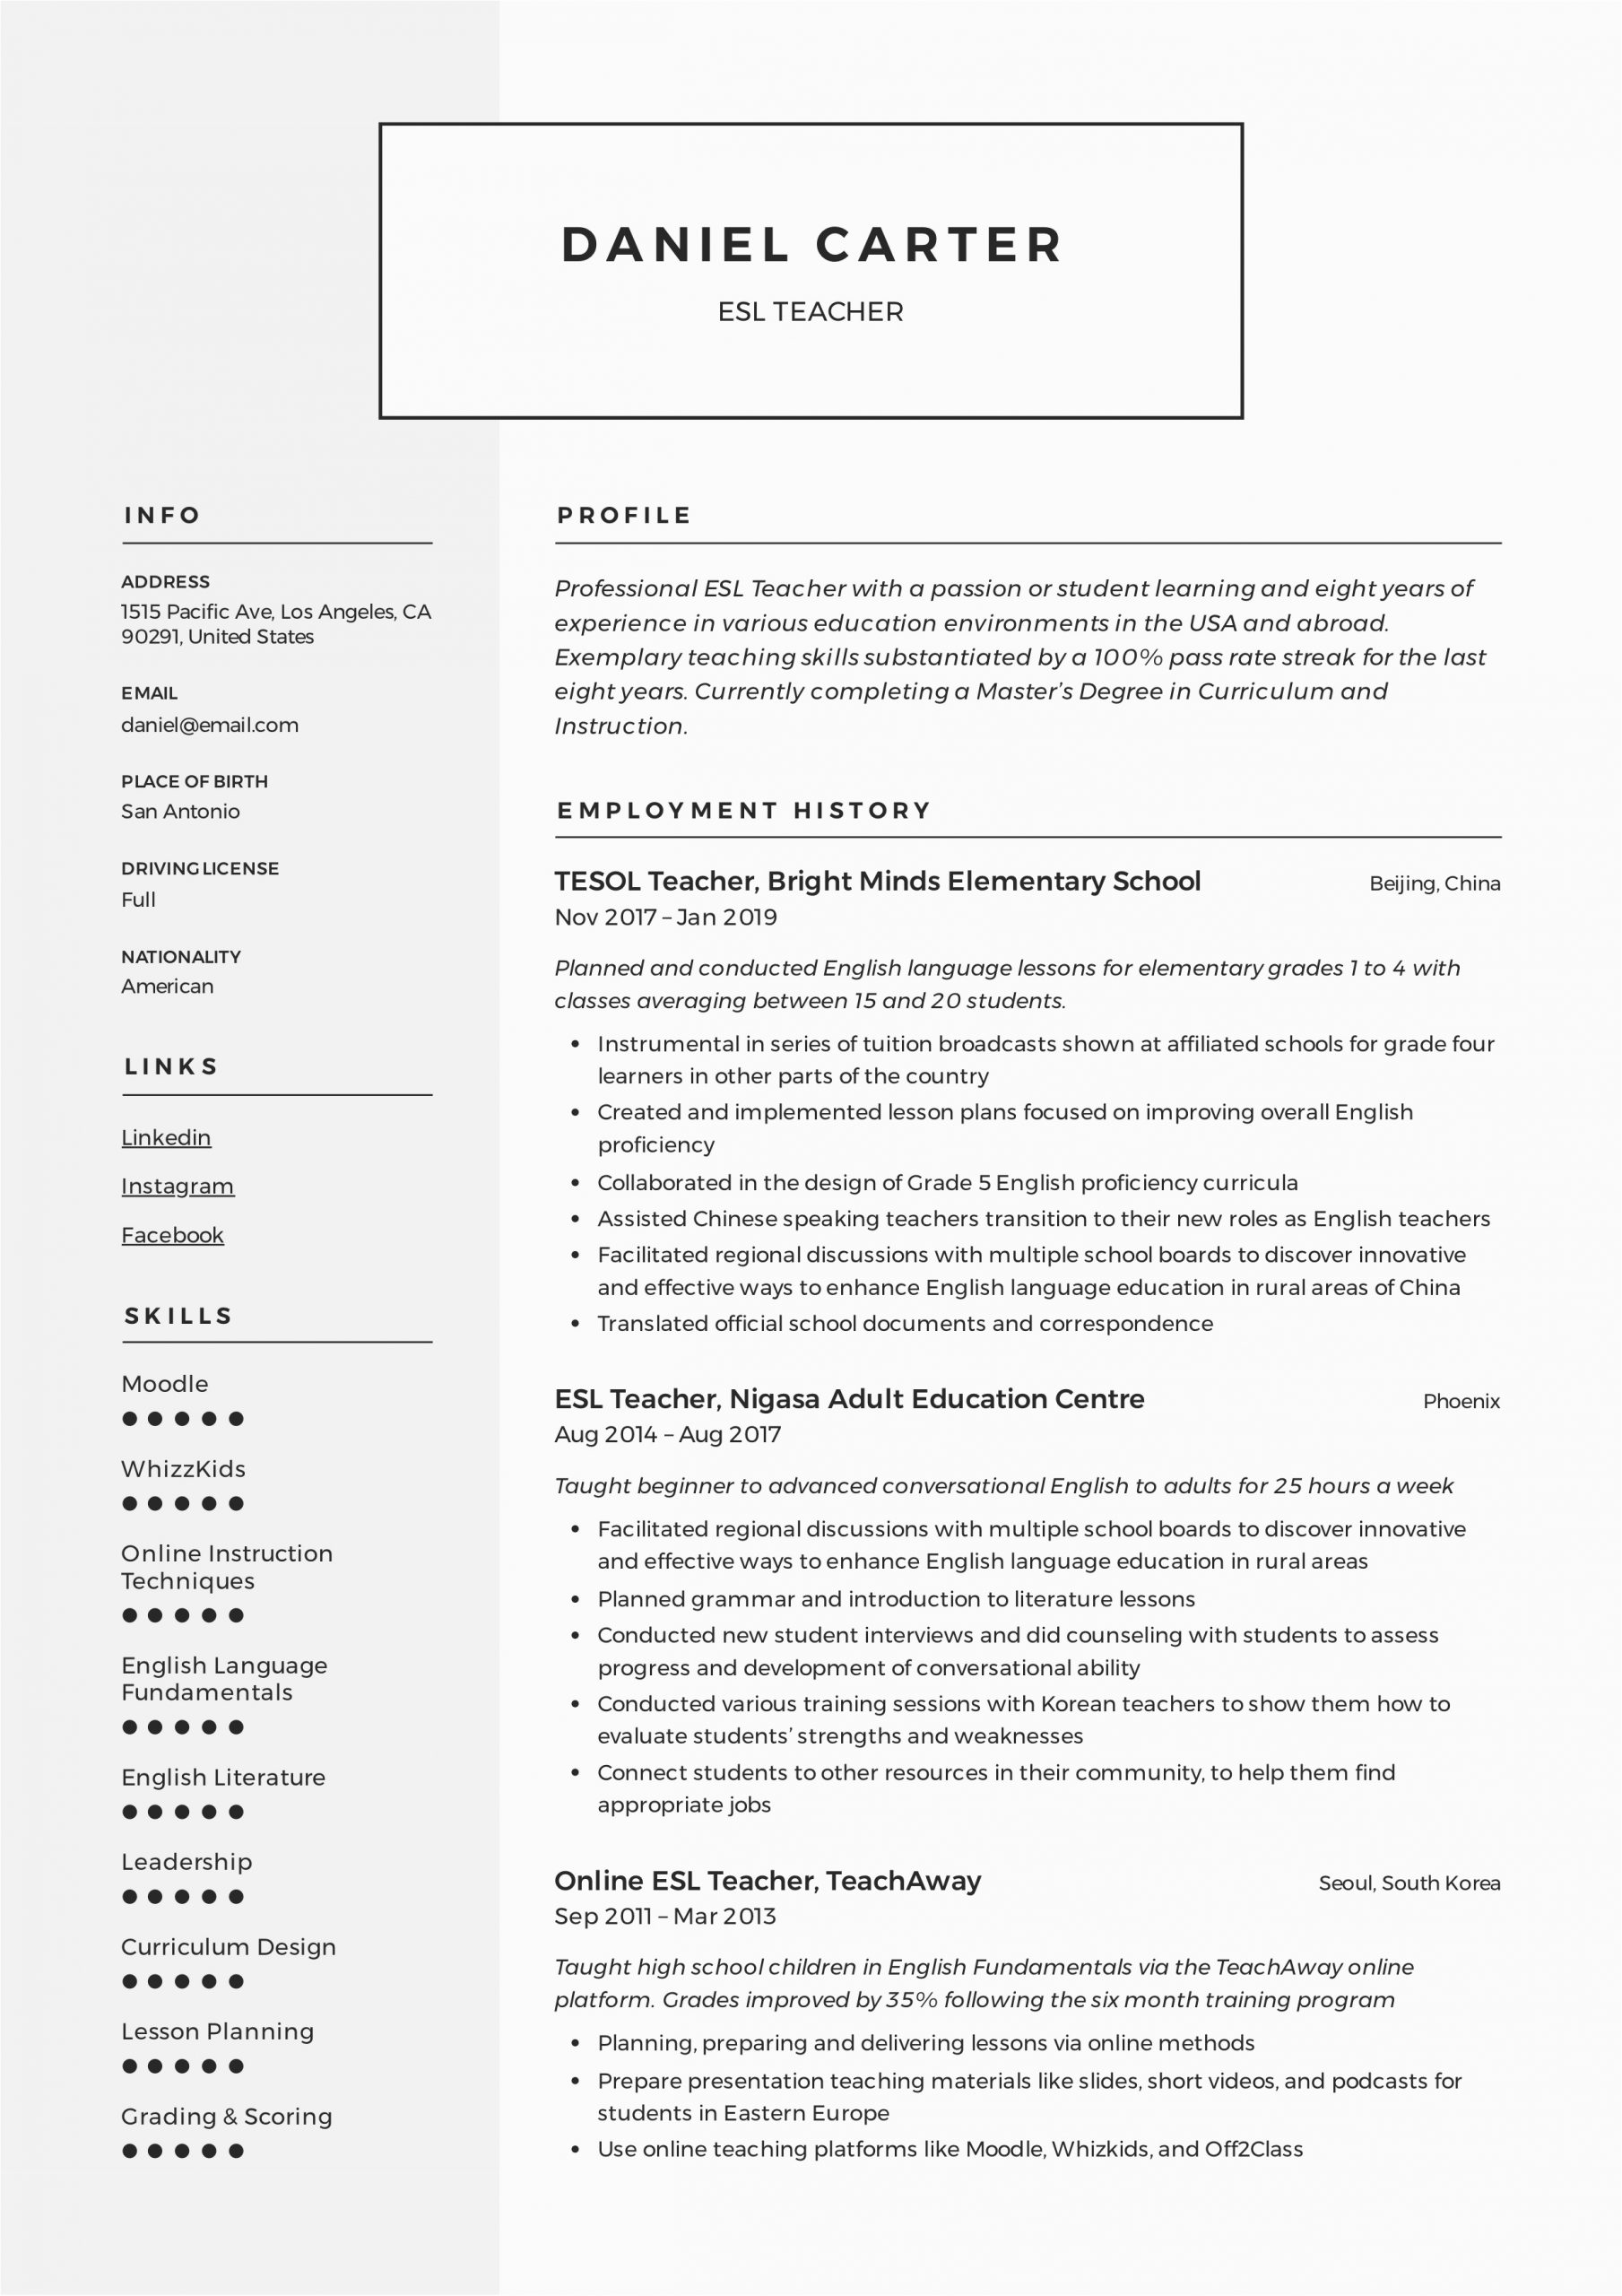 Sample Resume for Esl Teaching Job 19 Esl Teacher Resume Examples & Writing Guide